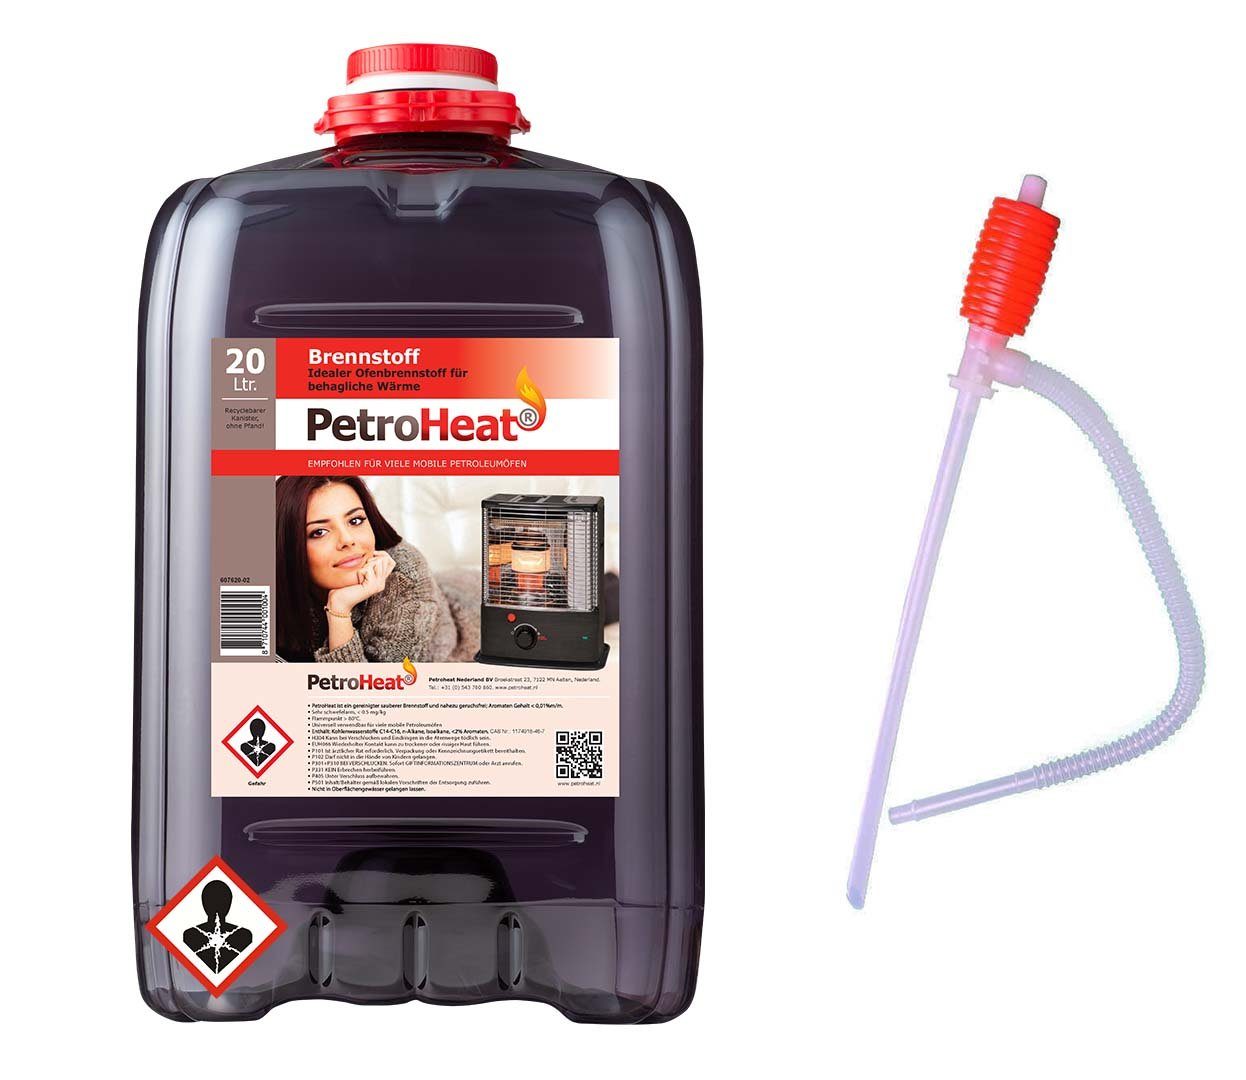 PetroHeat Petroleum 20 Liter Brennstoff Petroleum-Heizung, mobile Petroleumöfen gerusarm für mit Petroleumofen, Handpumpe, für